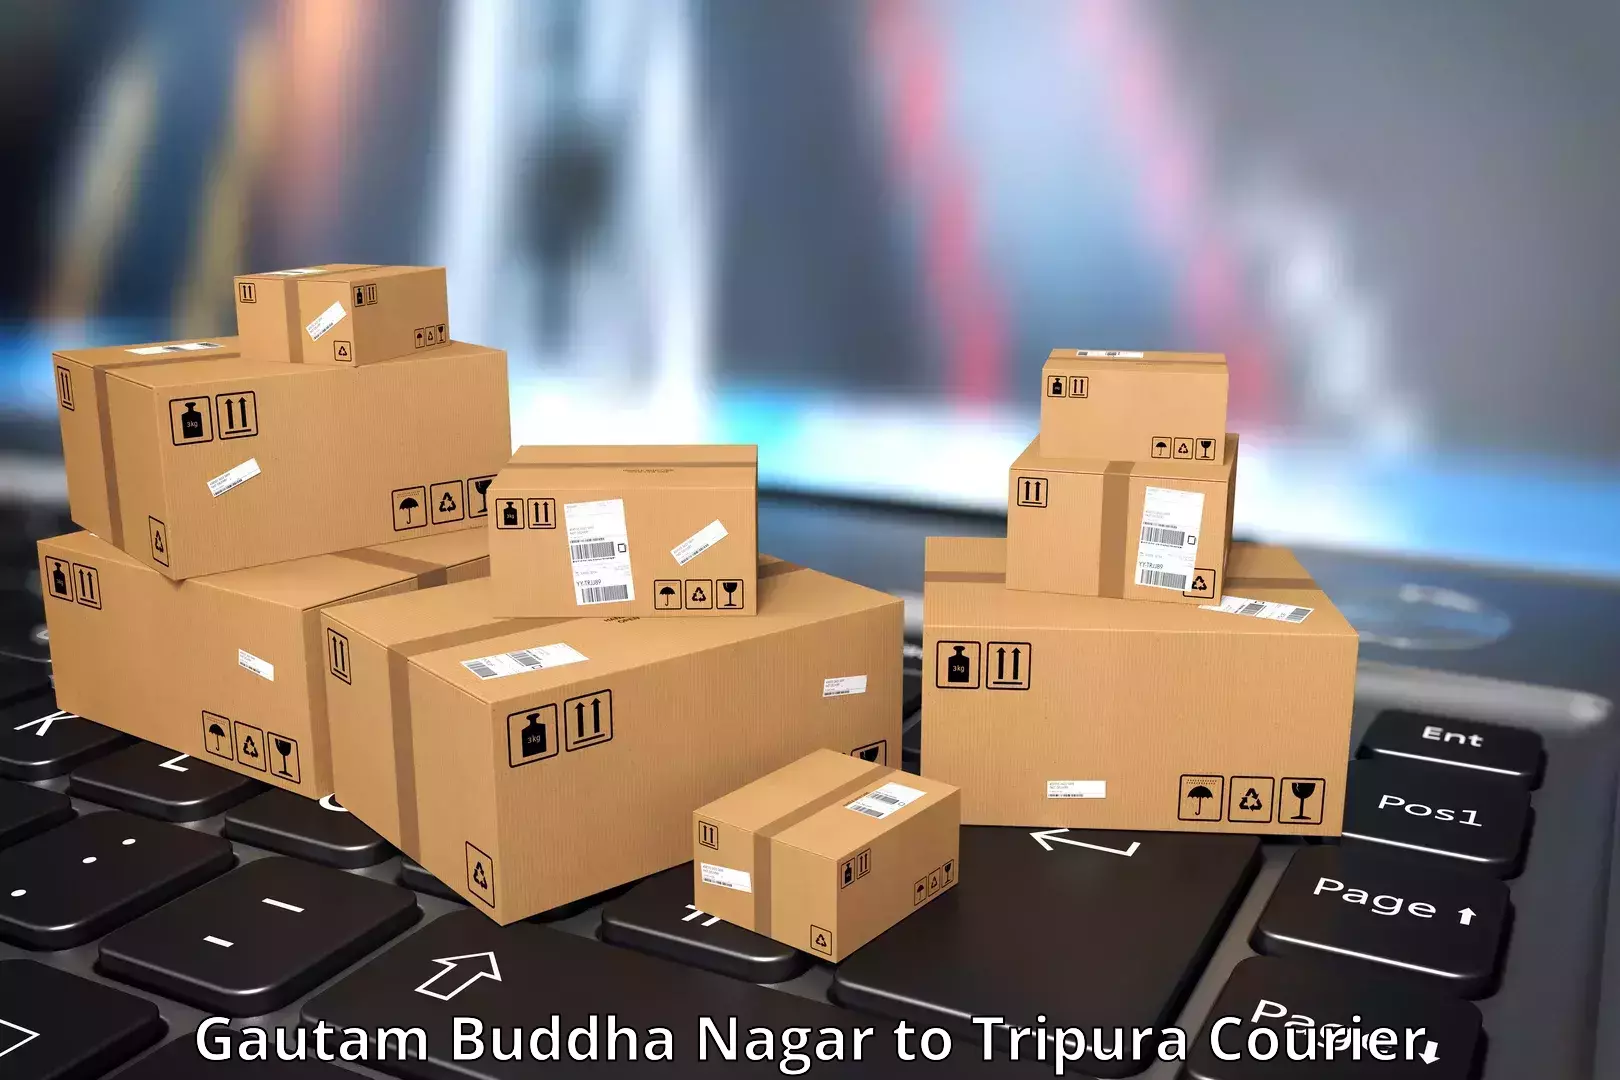 Customer-oriented courier services in Gautam Buddha Nagar to Manu Bazar